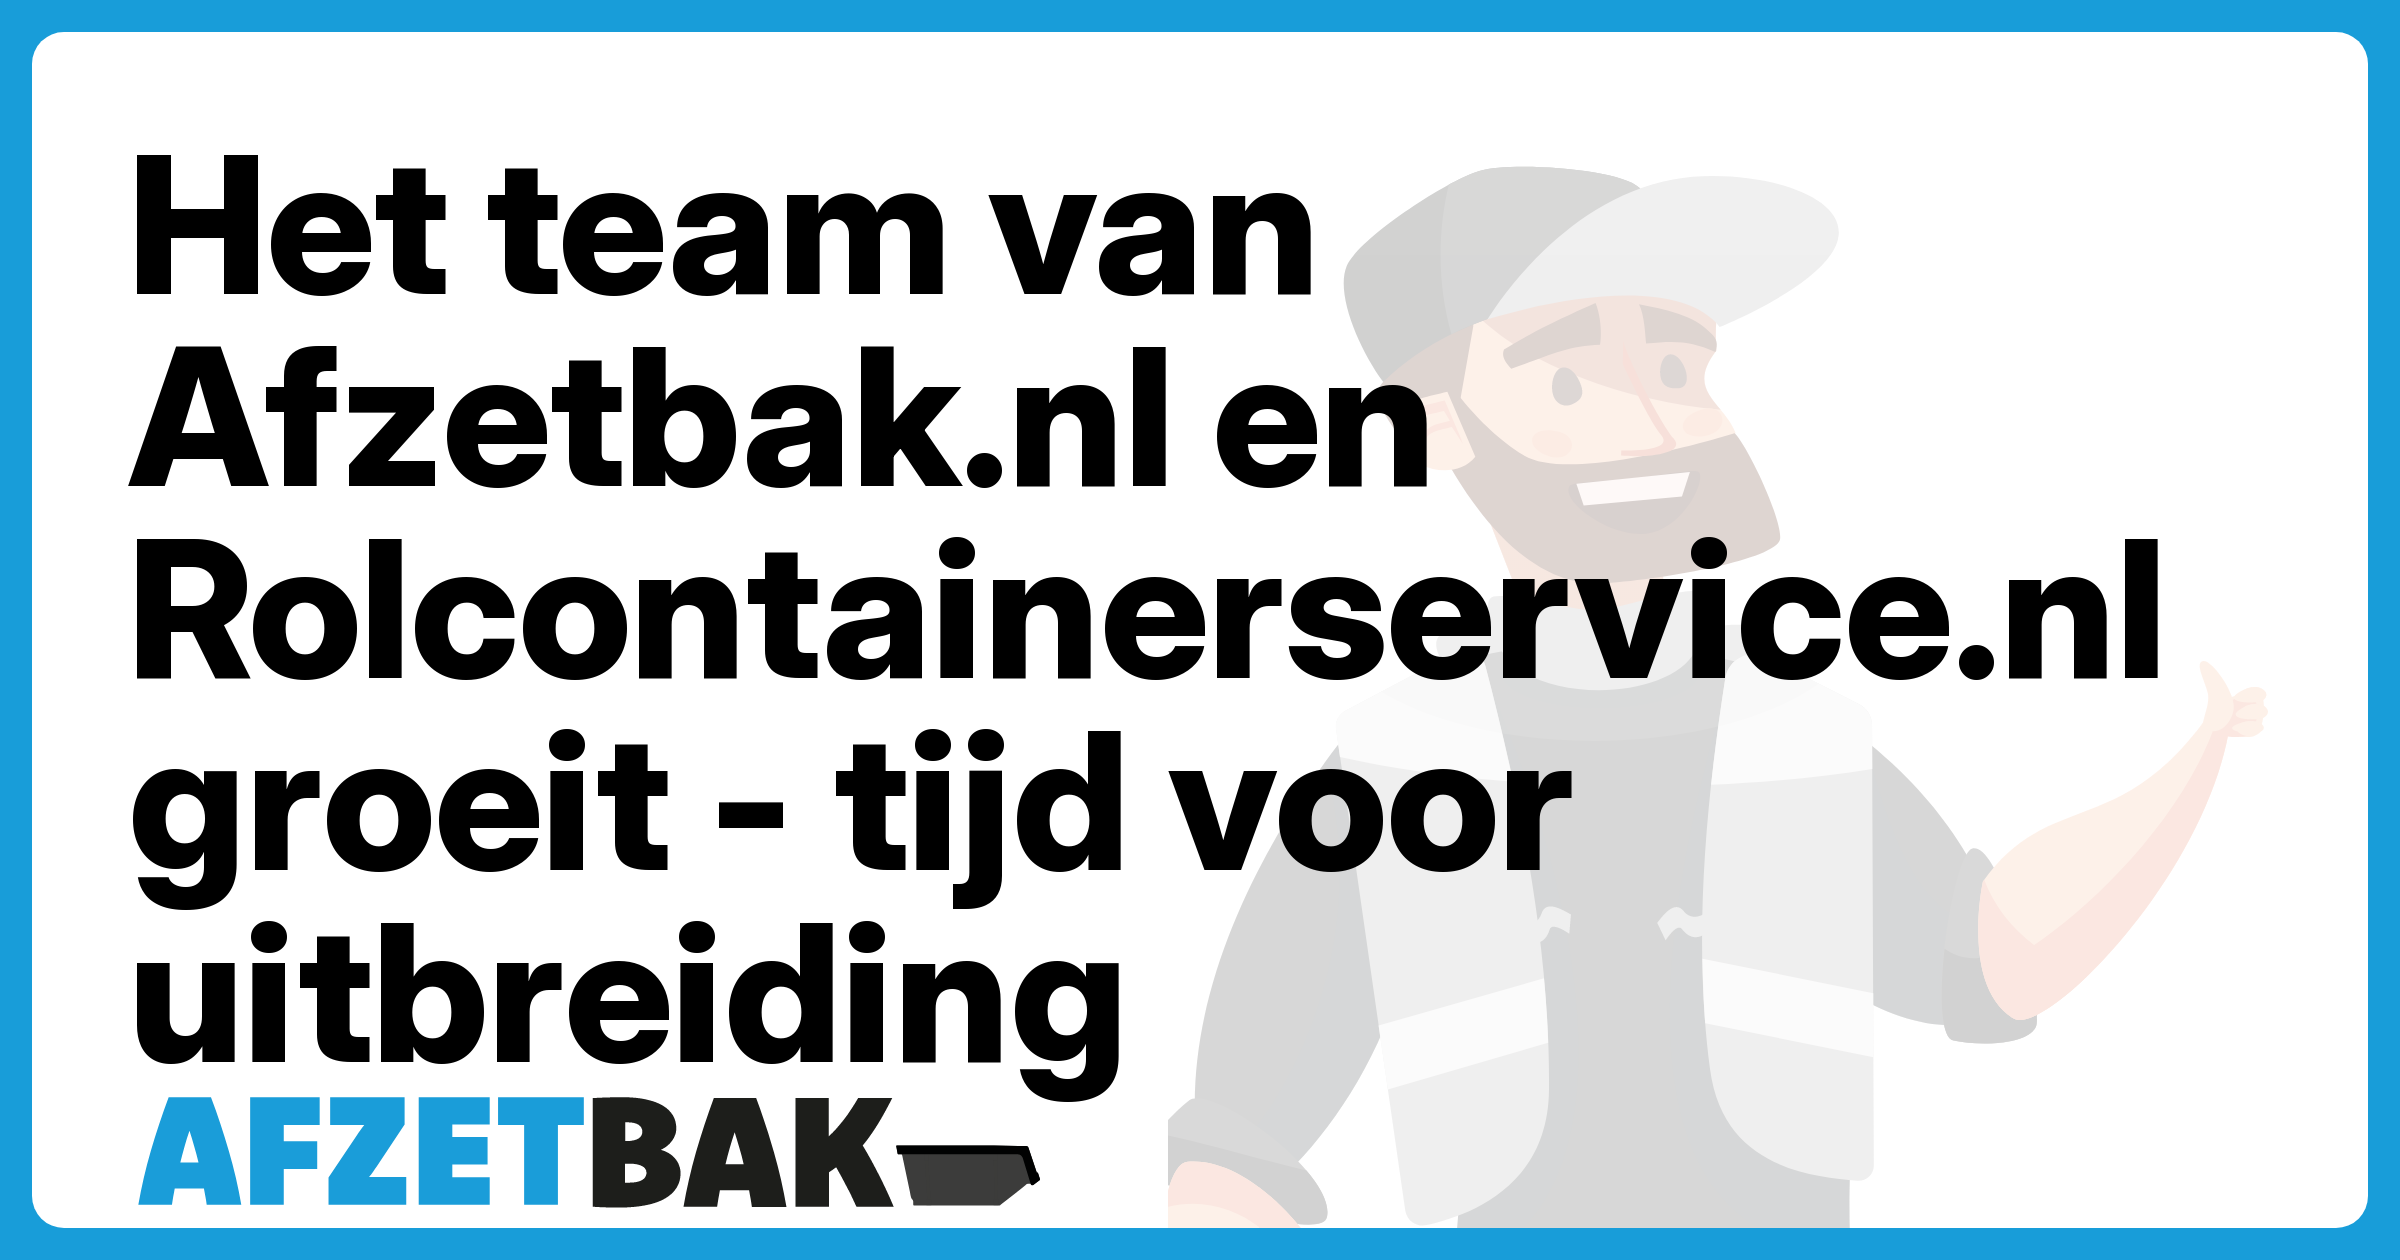 Het team van Afzetbak.nl en Rolcontainerservice.nl groeit - tijd voor uitbreiding - Afzetbak.nl